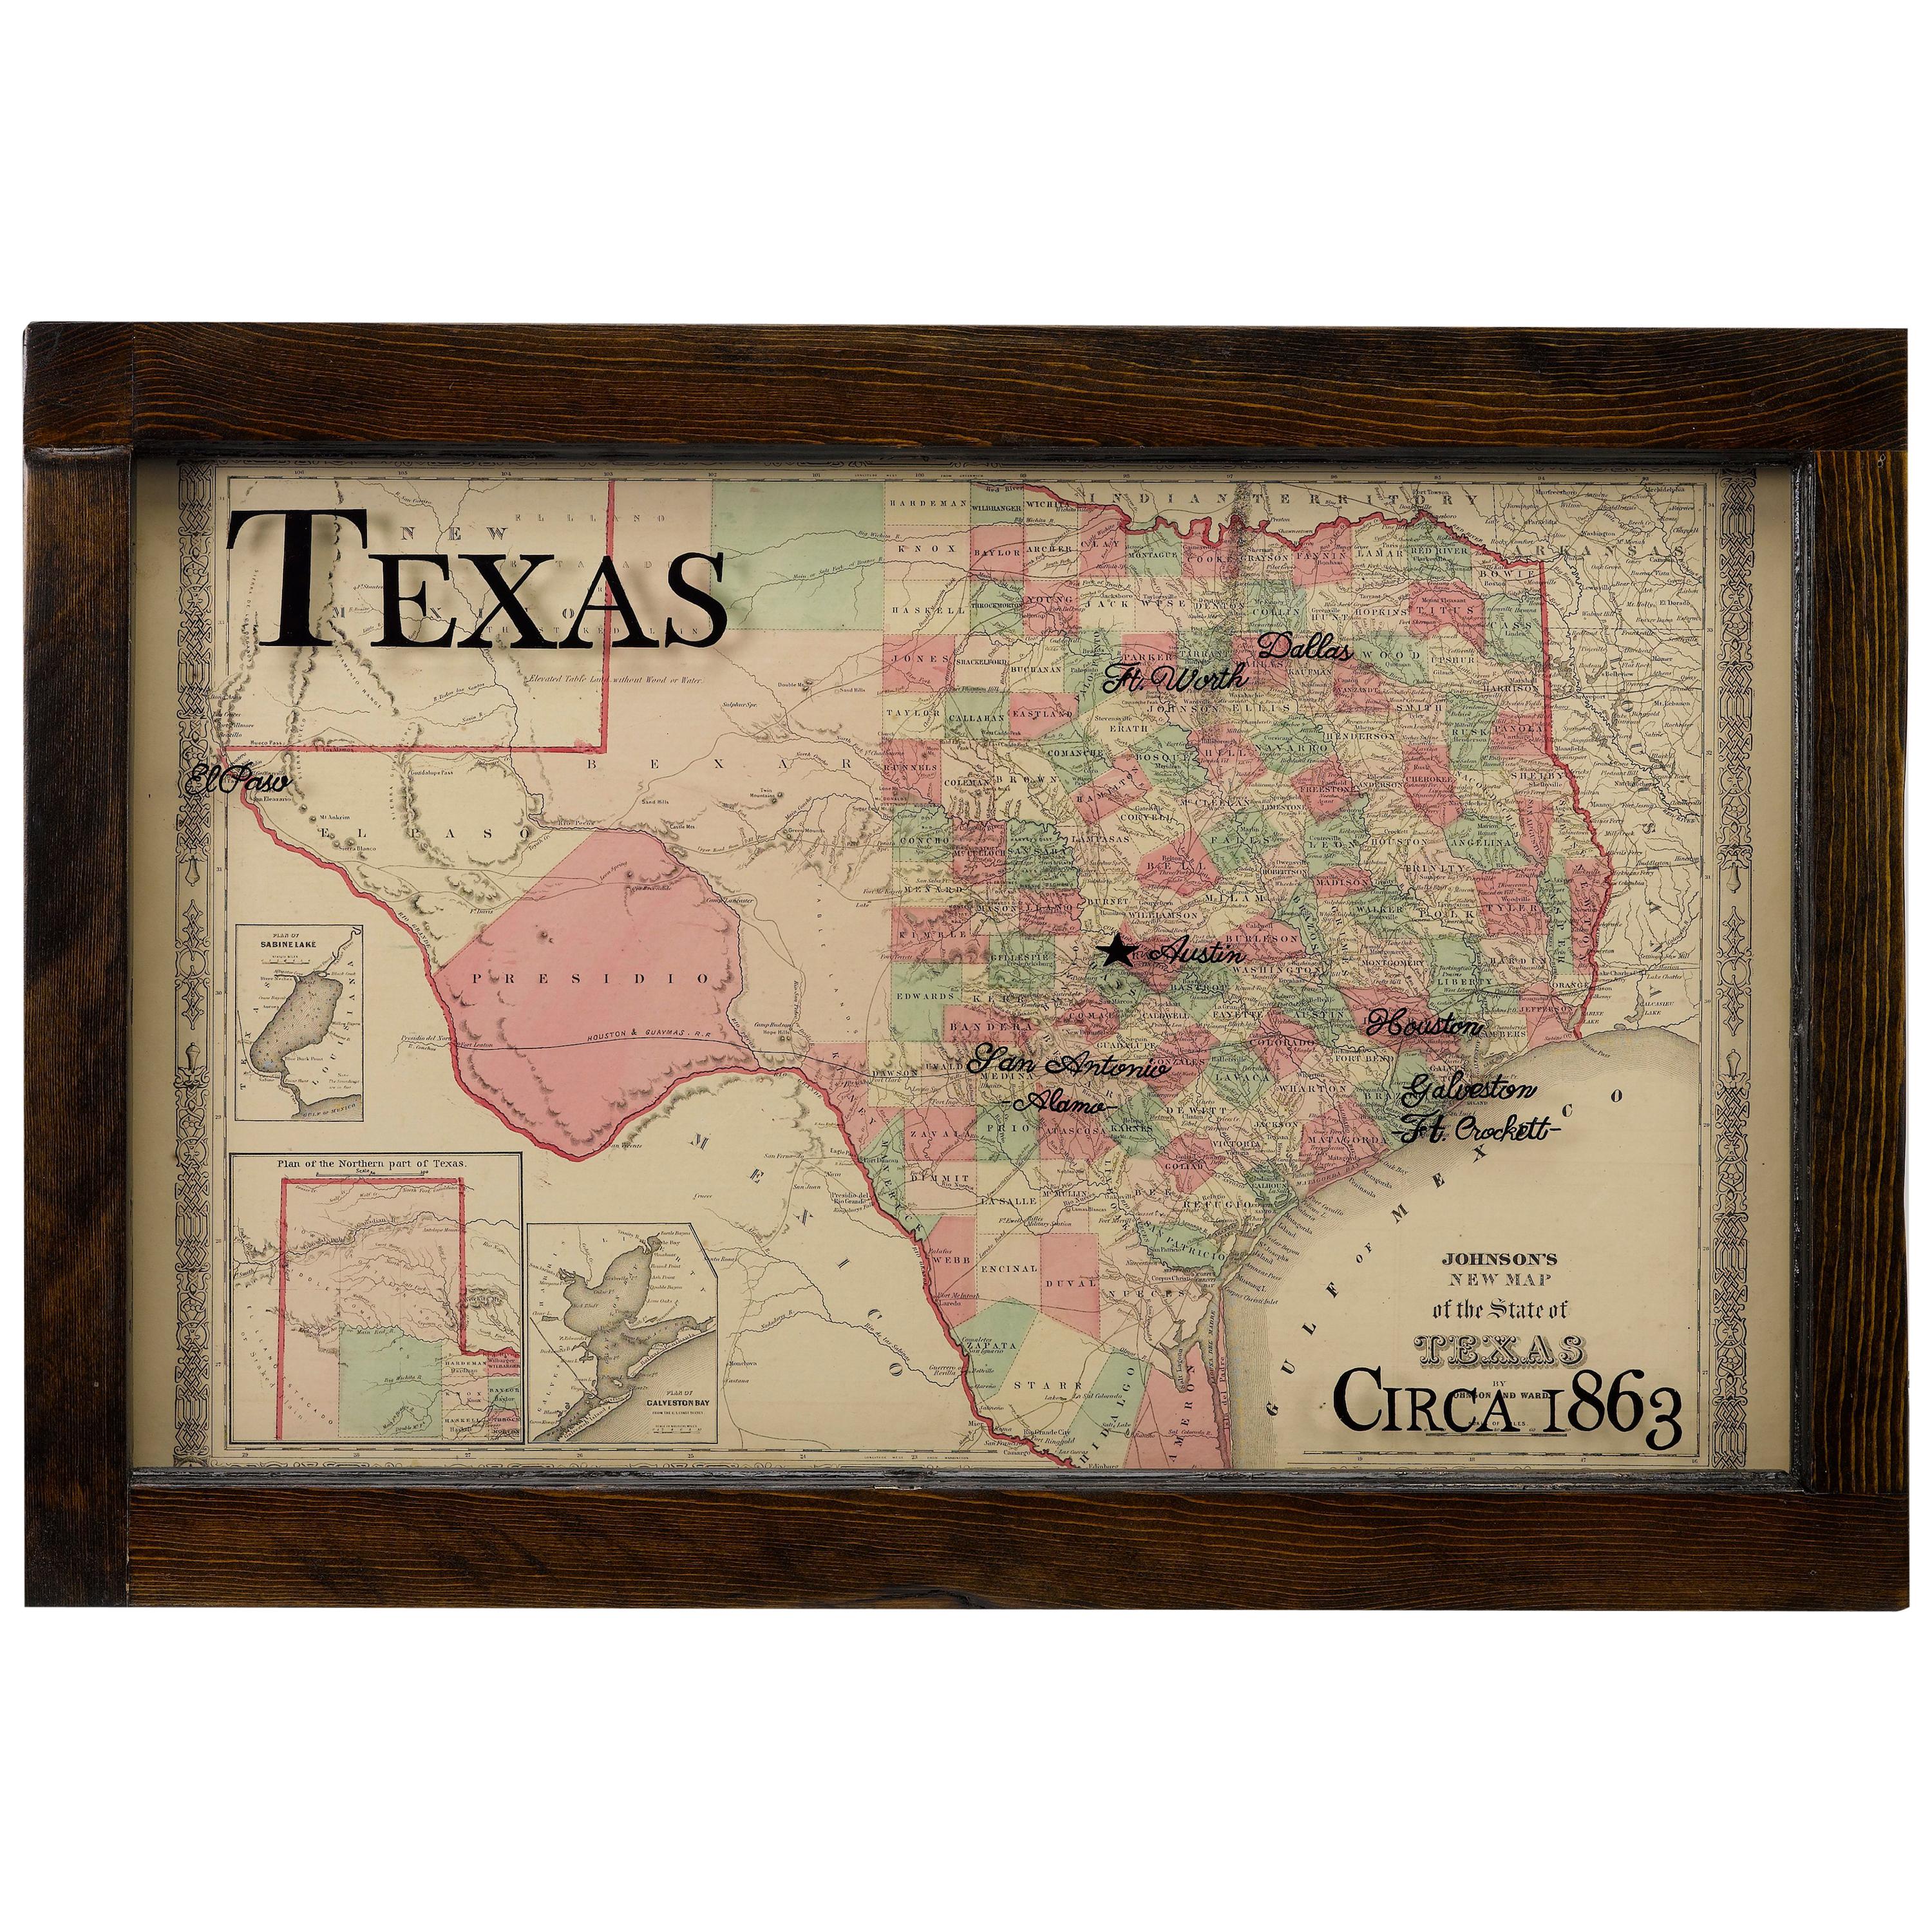 Texas Civil War Map, circa 1863